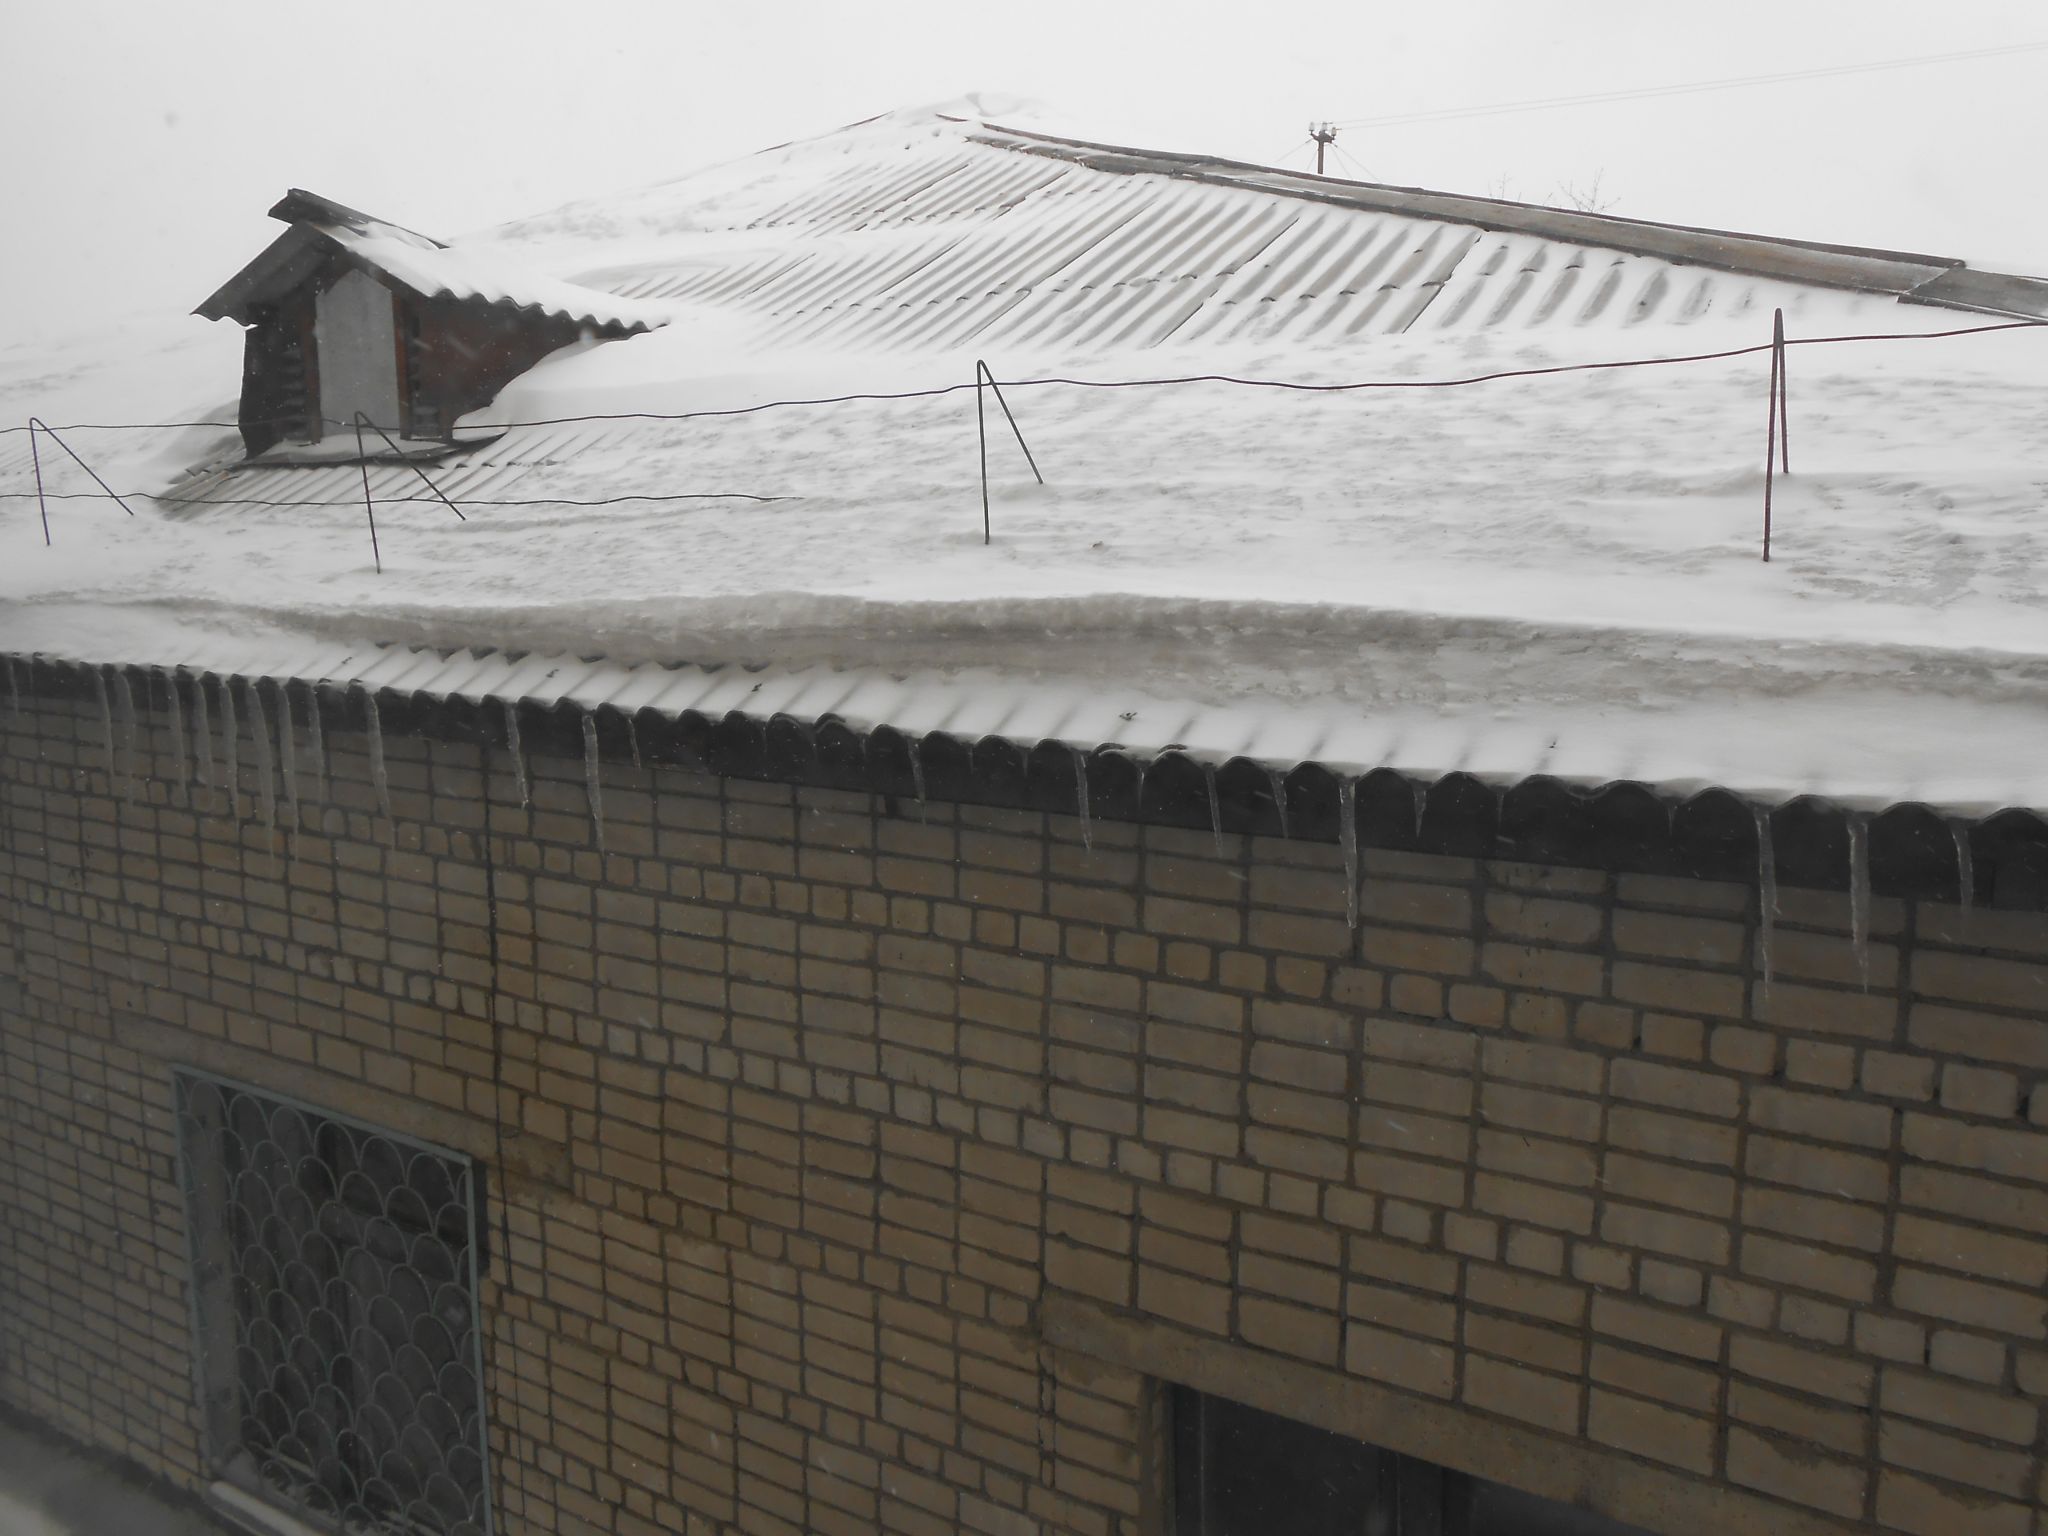 Дома засыпало снегом по крышу